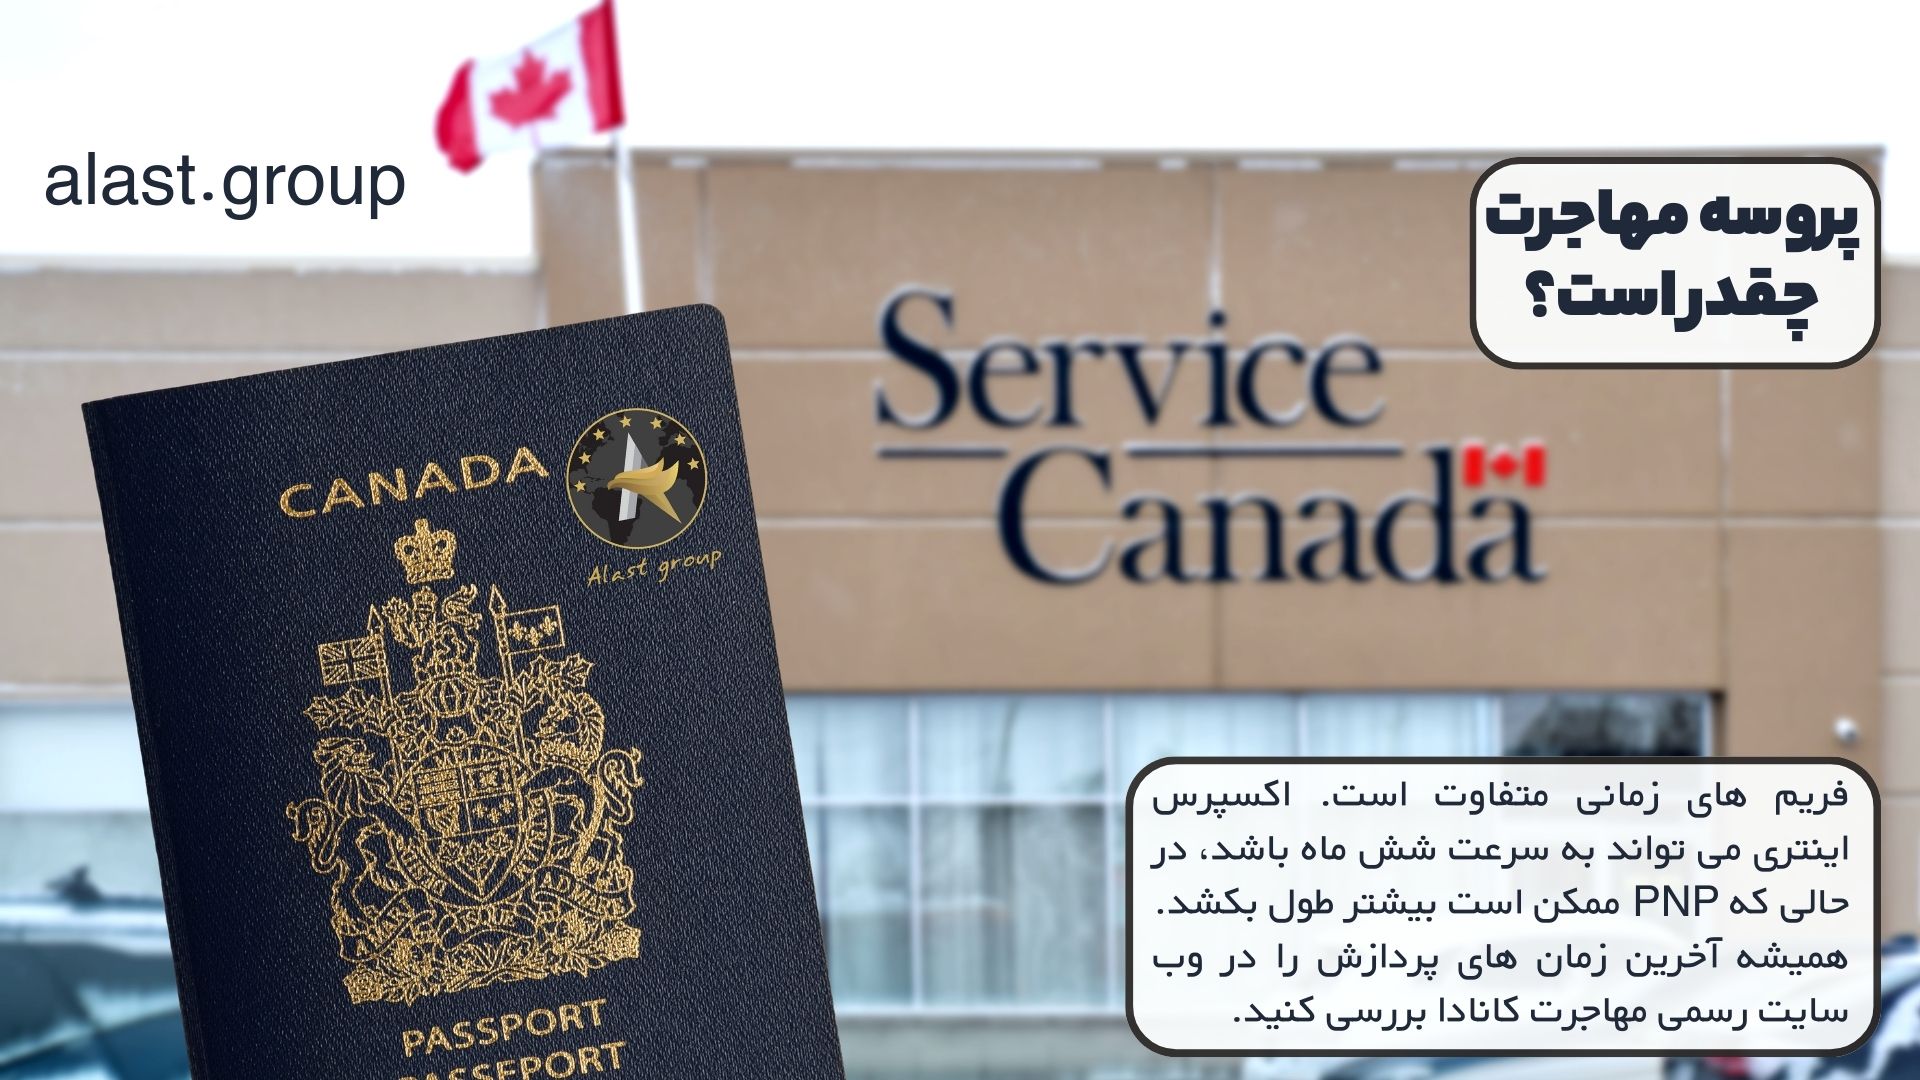 سوالات متداول مهاجرت به کانادا: پروسه مهاجرت چقدر است؟